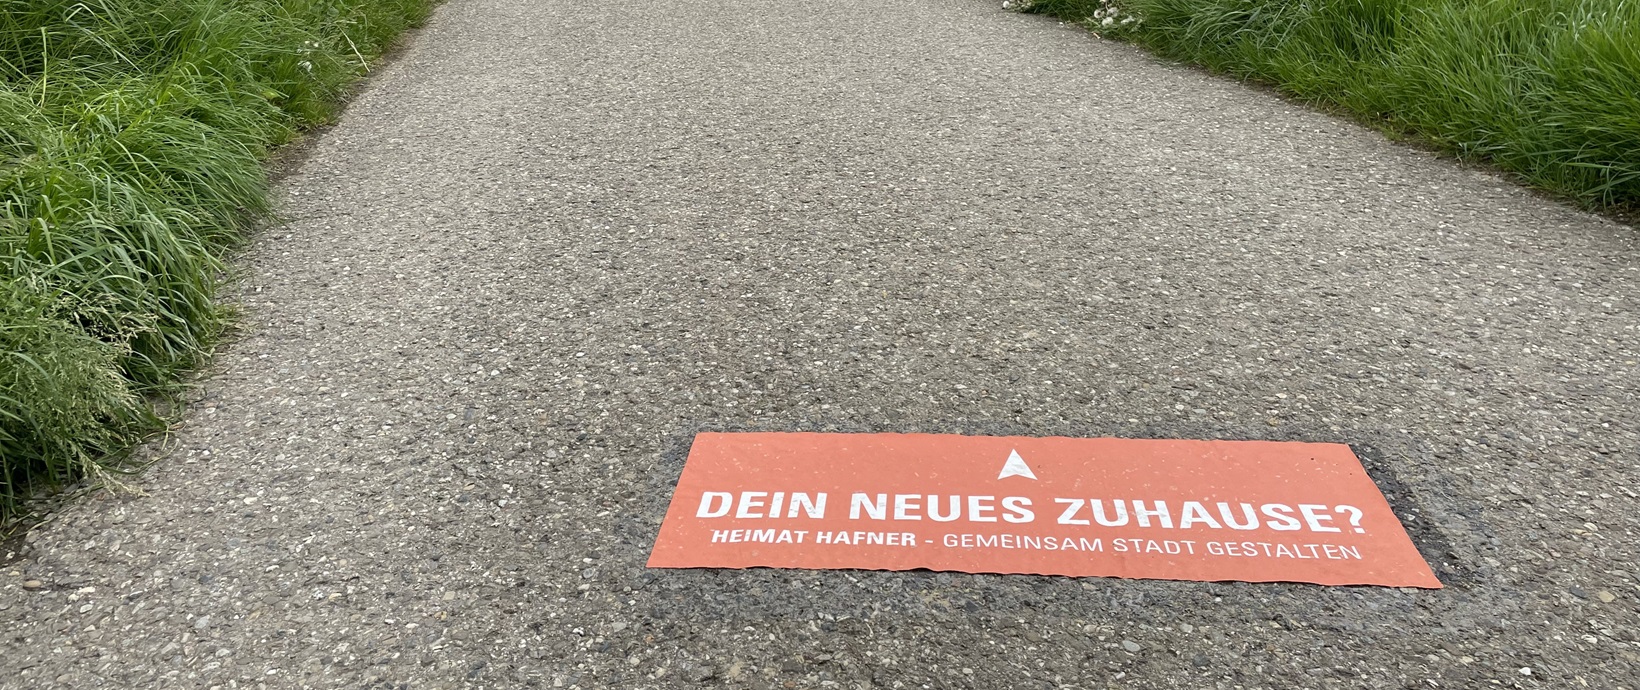 Orange Markierung mit dem Text "Dein neues Zuhause?" auf einem geteerten Weg mit Grün links und rechts des Weges